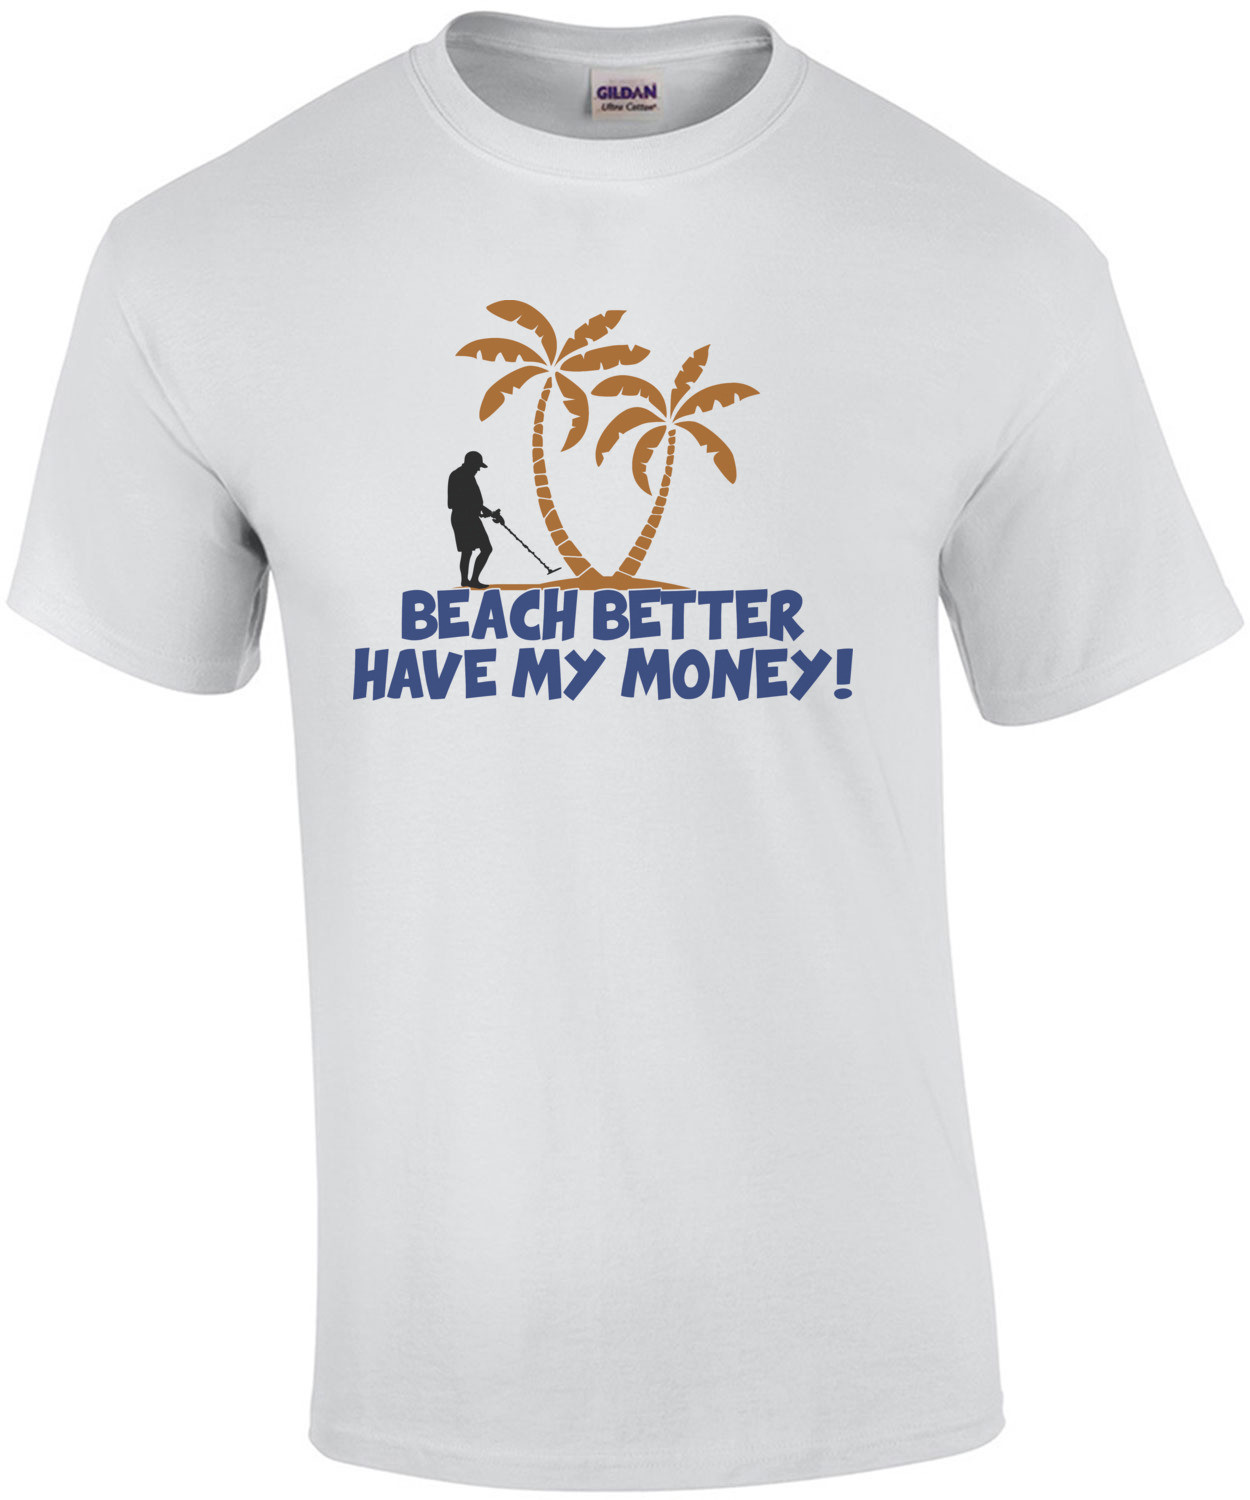 Beach Better Have My Money! T-Shirt